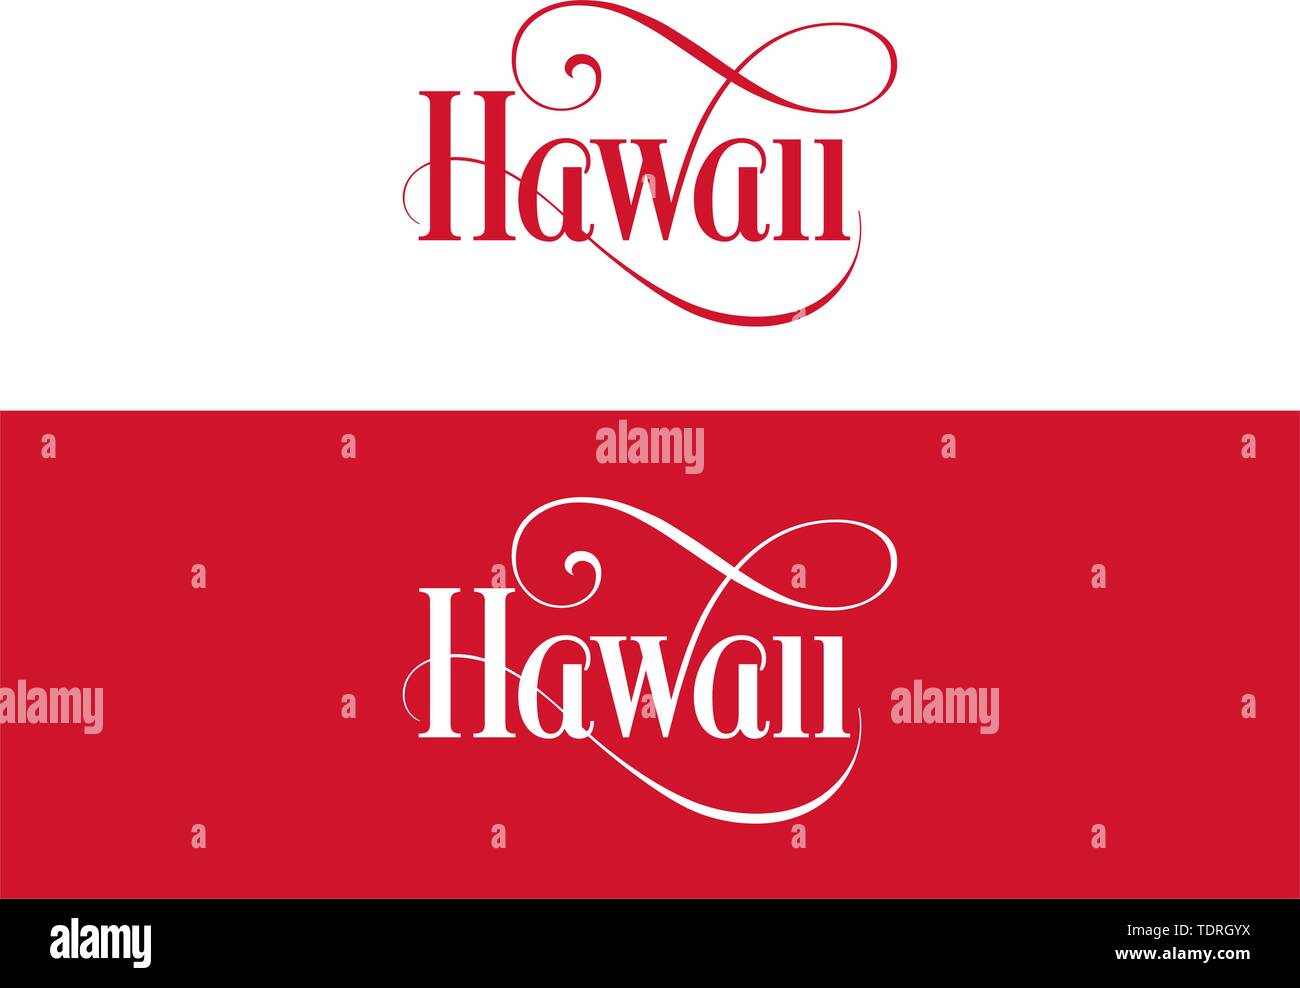 Typographie de l'USA Hawaii Membres Illustration manuscrite sur les couleurs d'État des États-Unis. La calligraphie moderne pour votre conception de l'élément. Vecteur simple Illustration de Vecteur